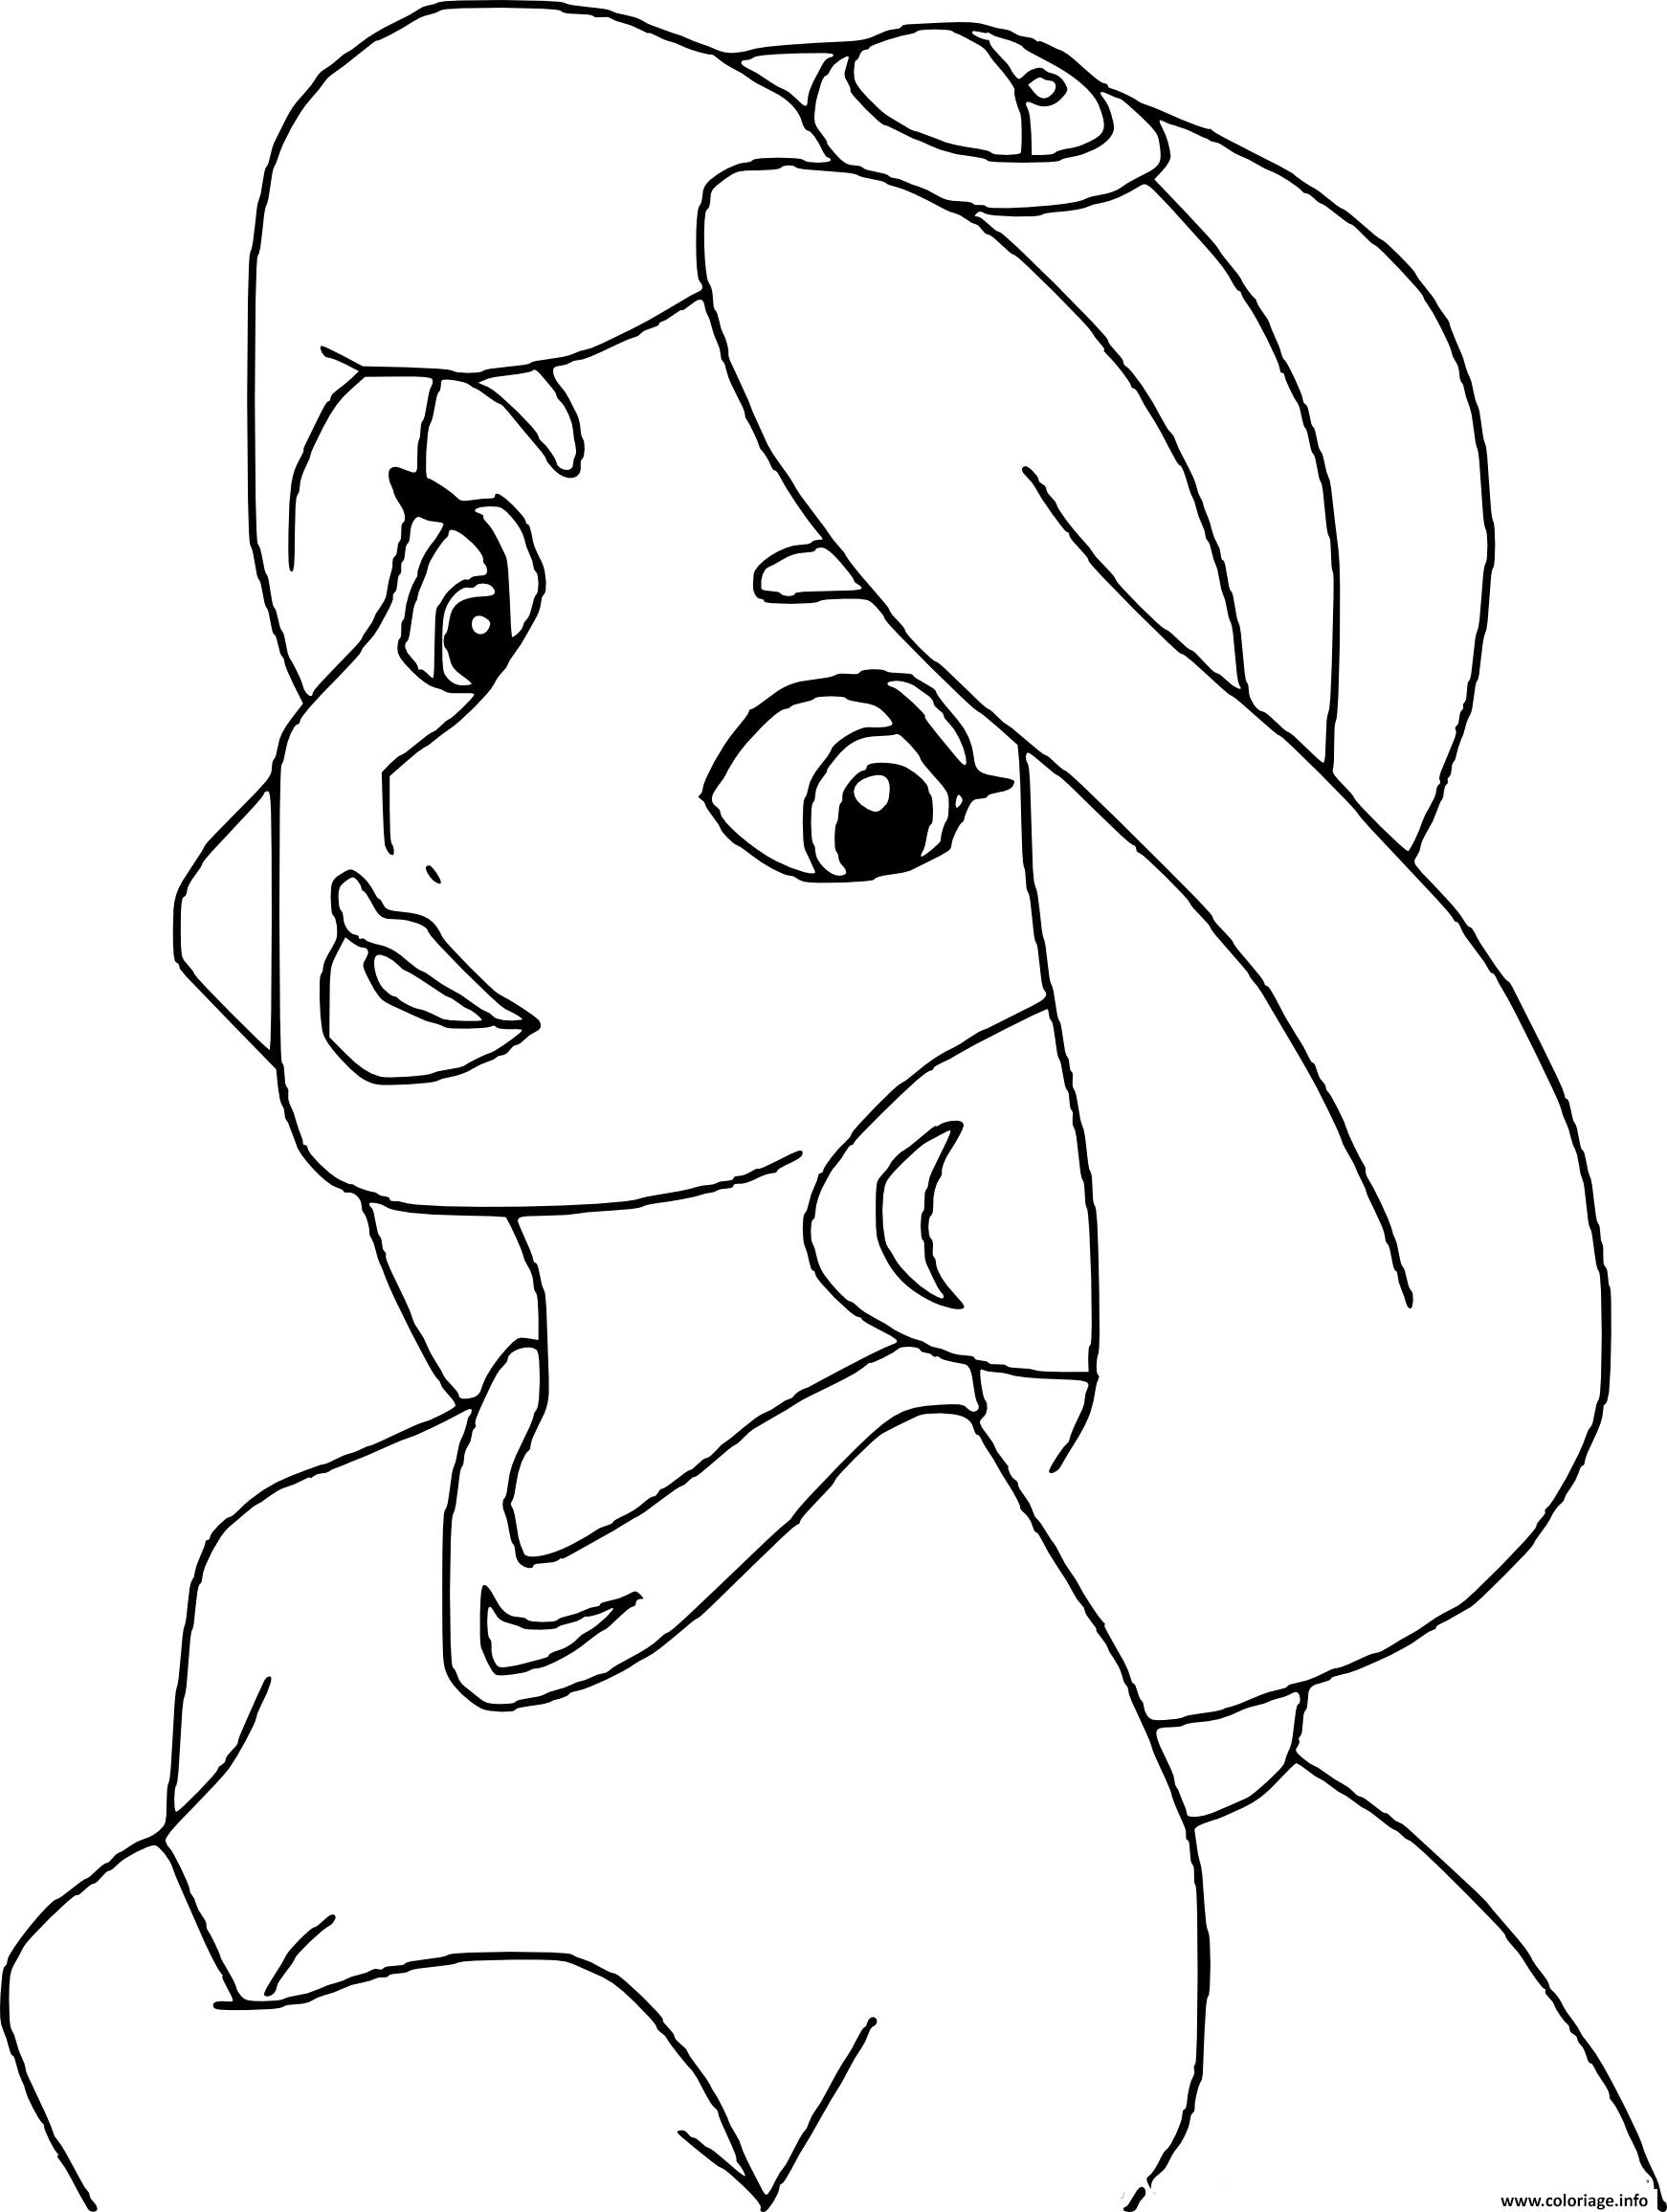 Coloriage Princesse Disney Jasmine Dessin Jasmine À Imprimer avec Coloriage Imprimer Disney 